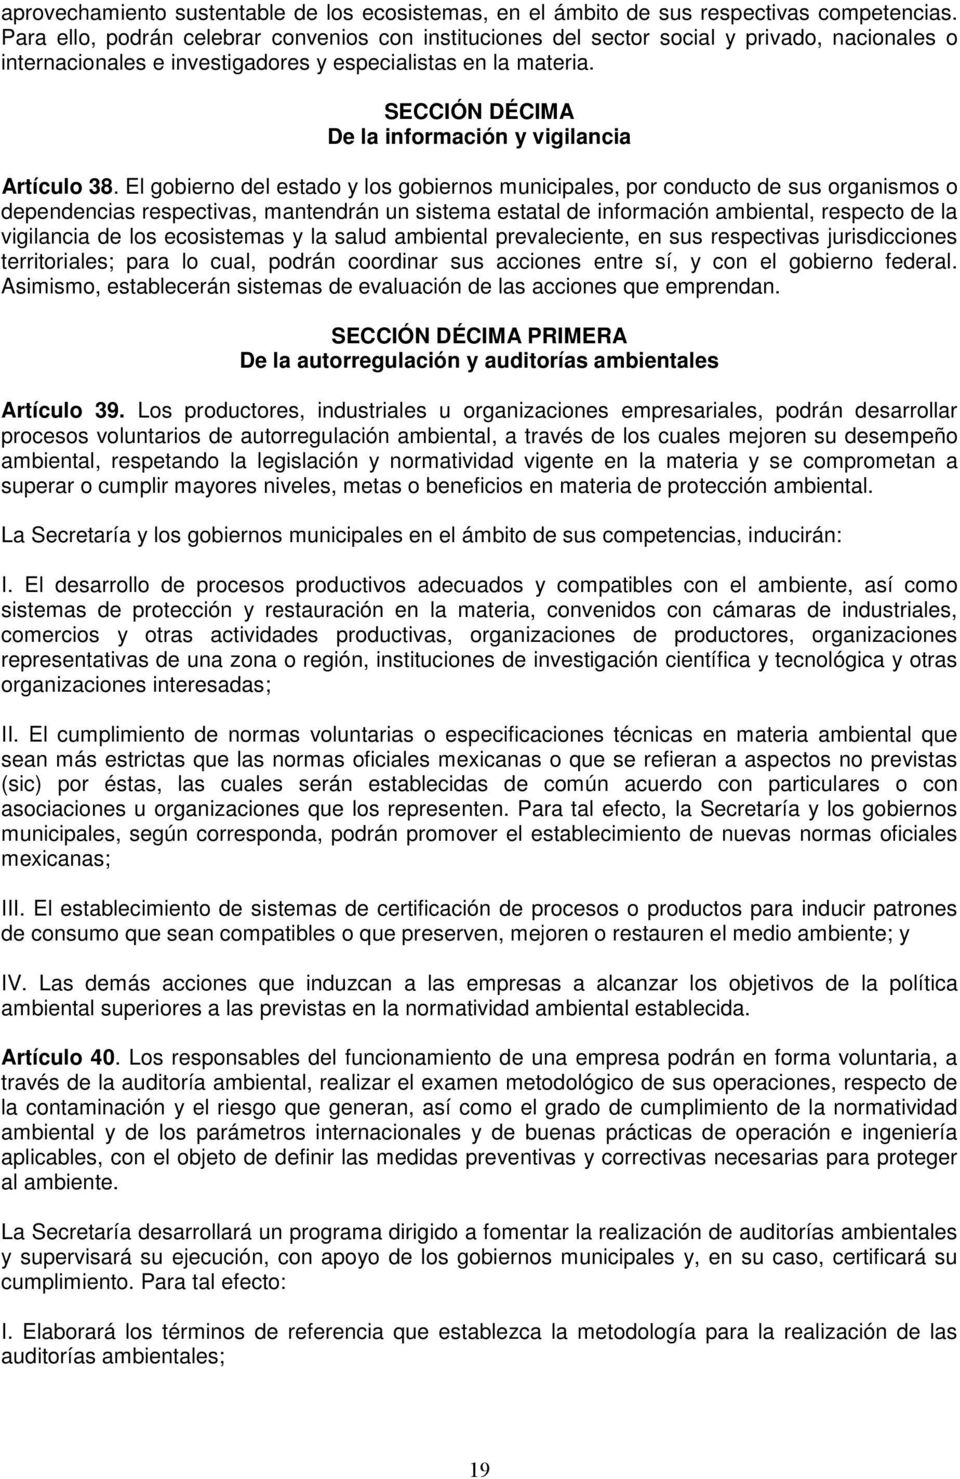 SECCIÓN DÉCIMA De la información y vigilancia Artículo 38.